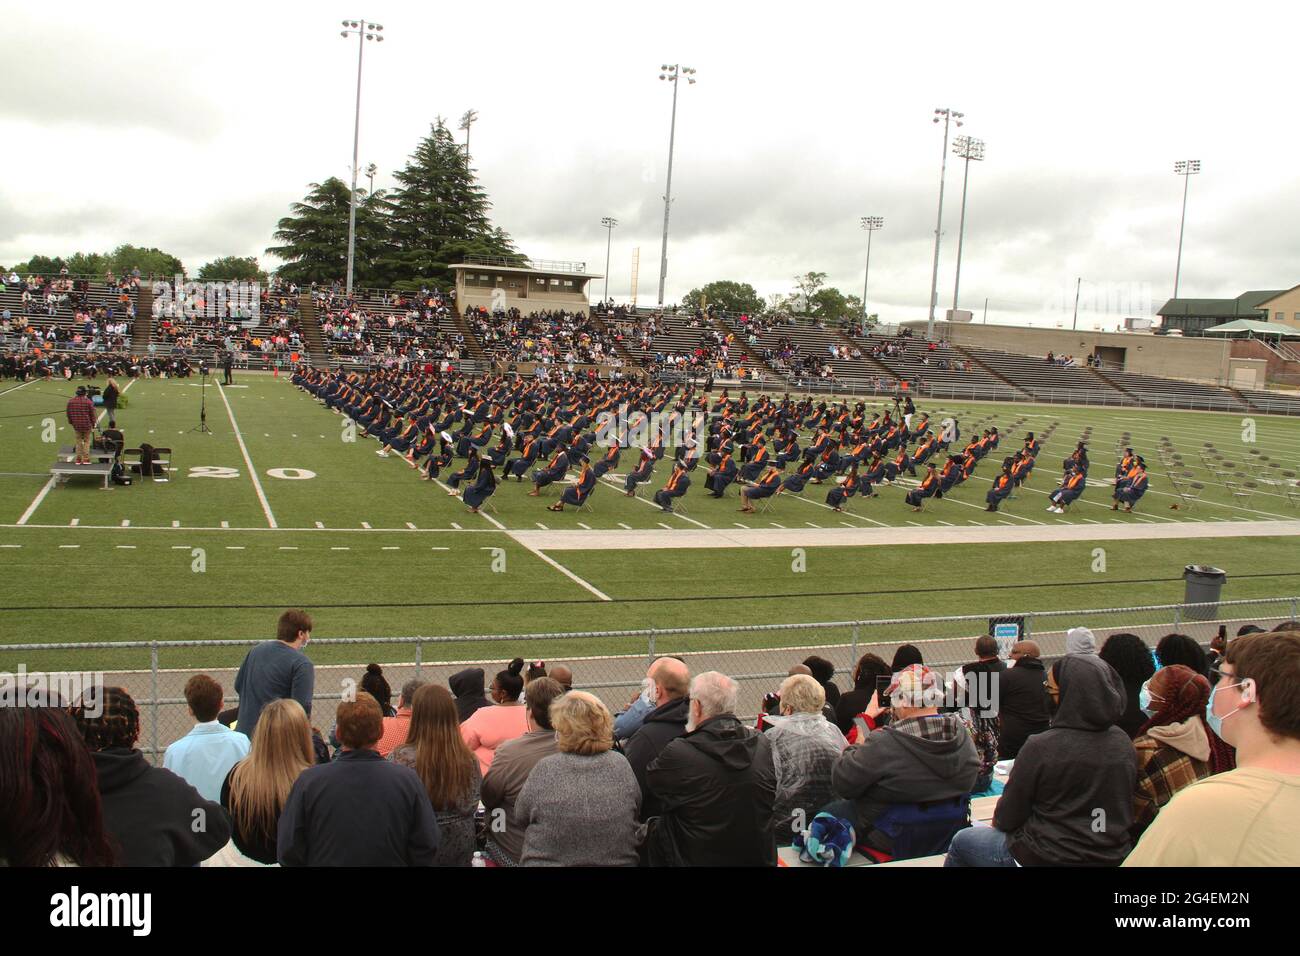 Mayo 2020, EE.UU. Una ceremonia de graduación de la escuela secundaria en un estadio hacia el final de la pandemia de COVID. Foto de stock